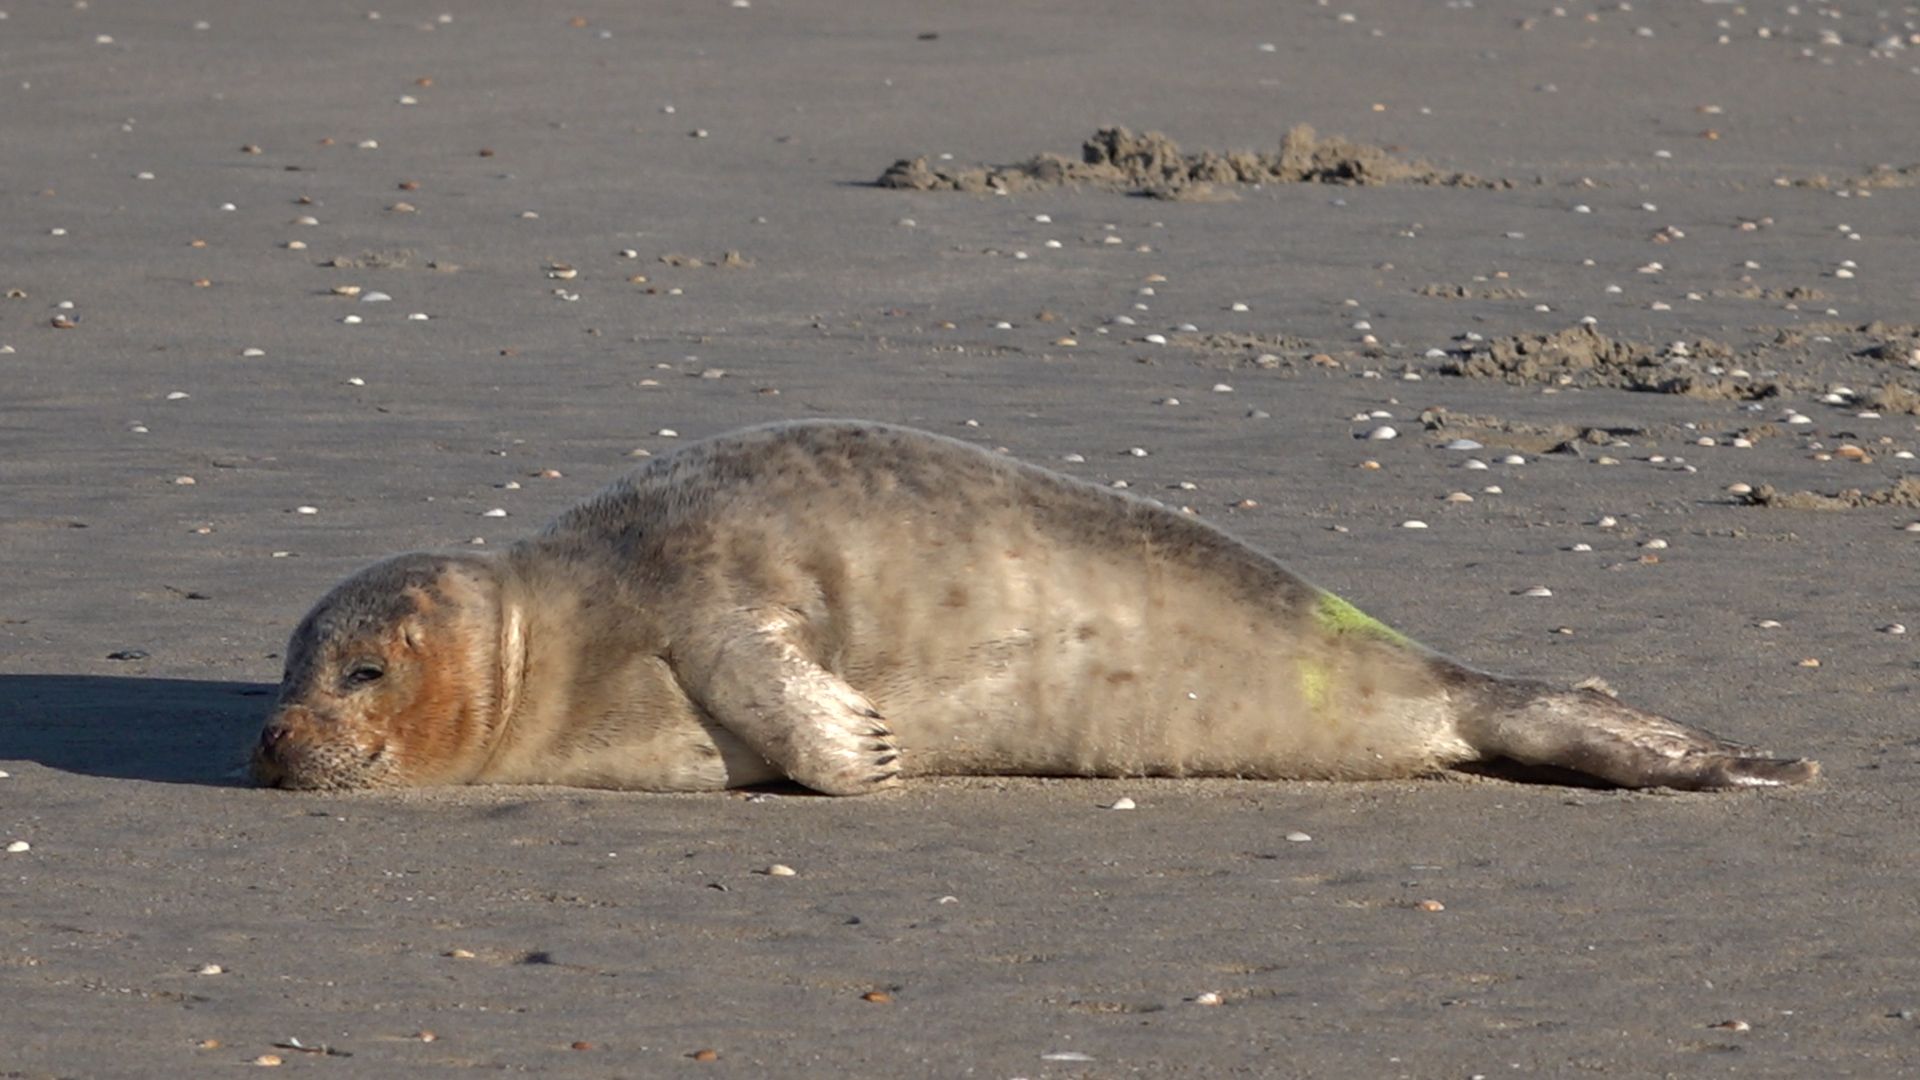 Zieke zeehond van strand gehaald